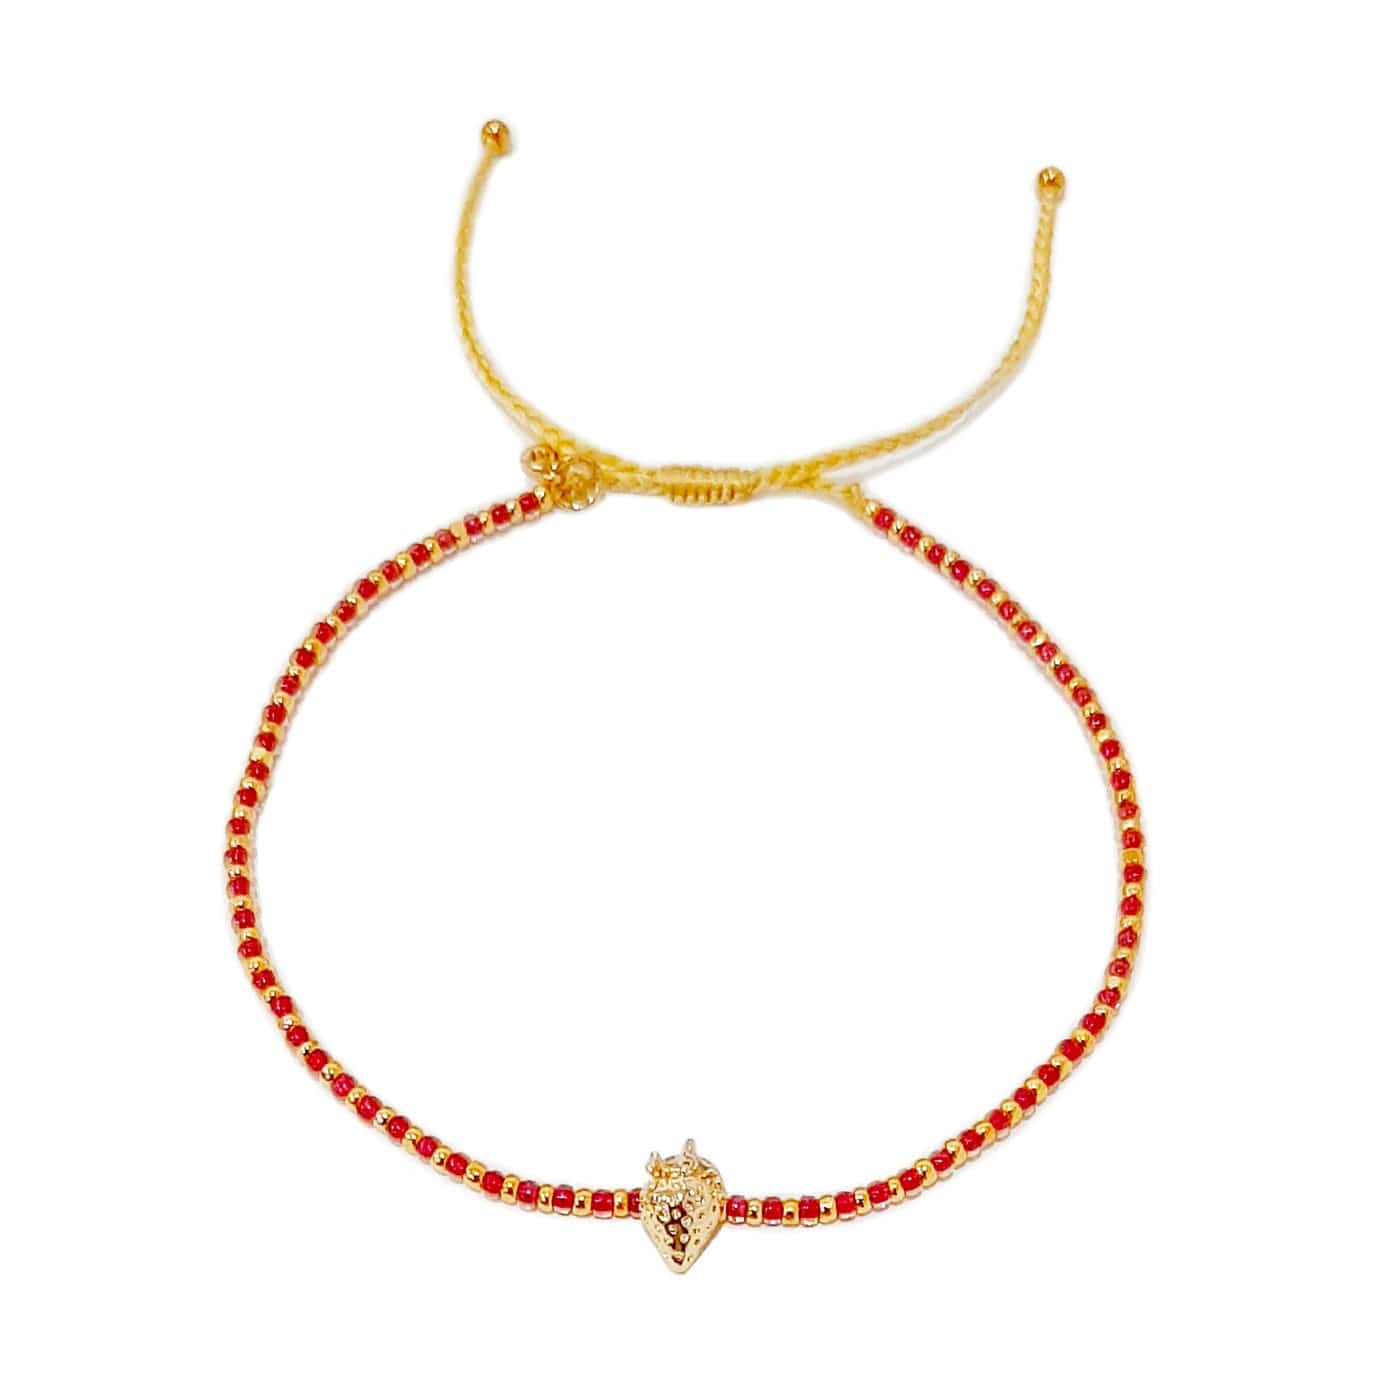 TAI JEWELRY Bracelet Handwoven Bracelet With Strawberry Charm